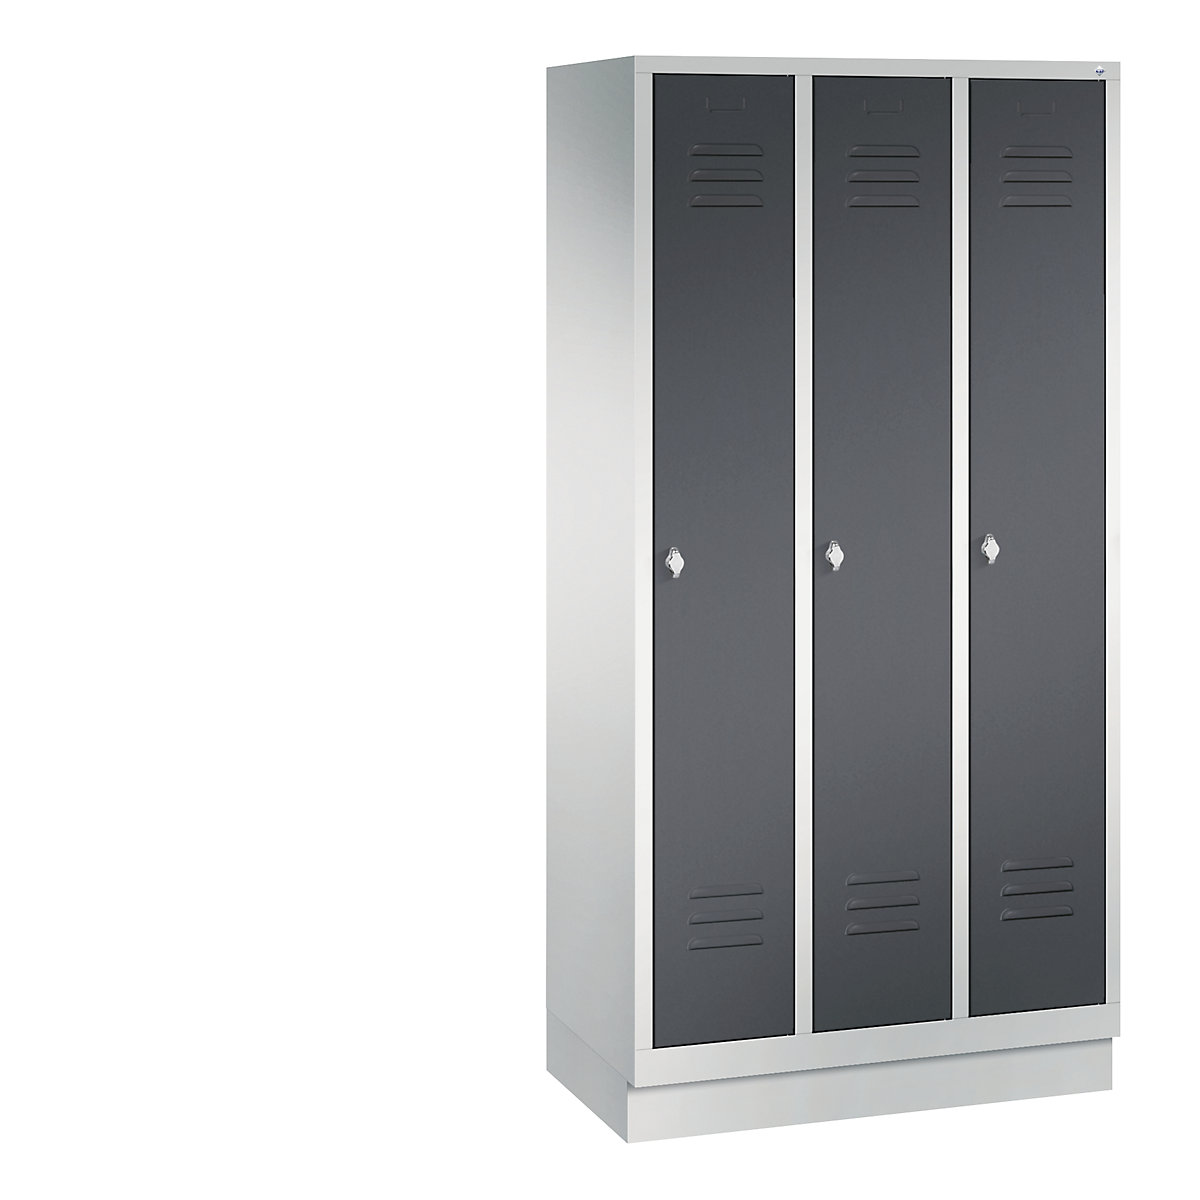 Garderobna omara CLASSIC s podnožjem – C+P, 3 predelki, širina 300 mm/predelek, svetlo sive / črno sive barve-7